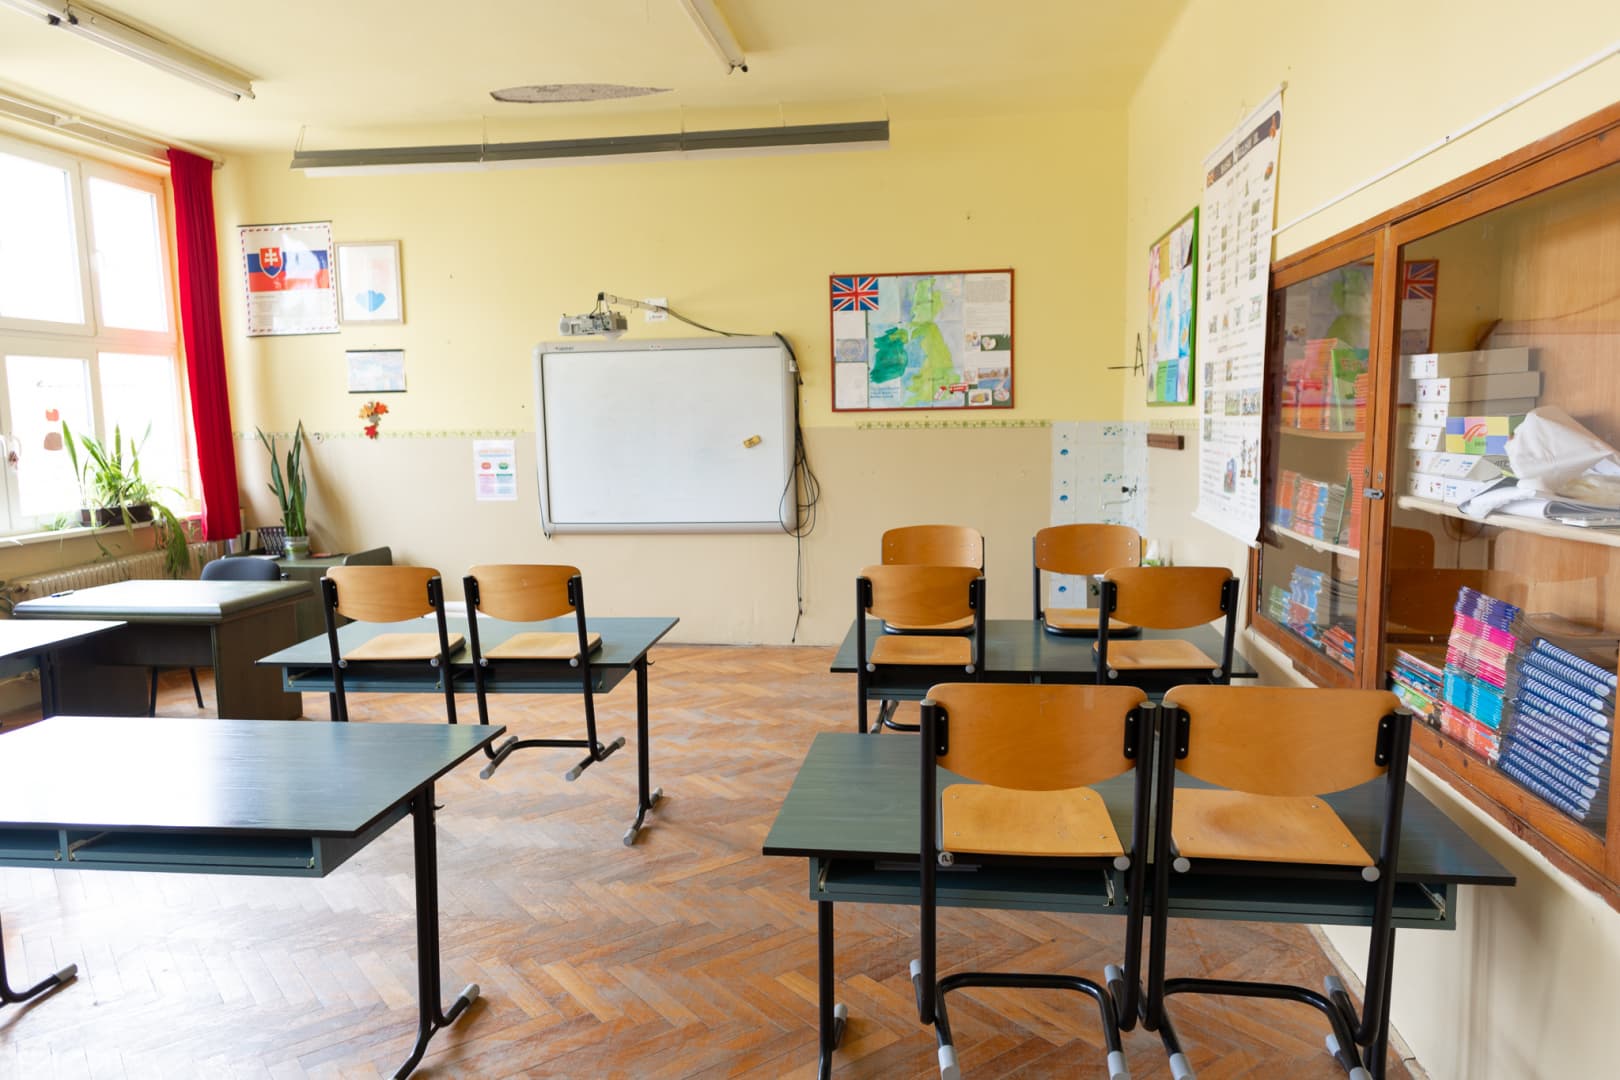 A Rozsnyói járás polgármesterei helyeslik az iskolák bezárását